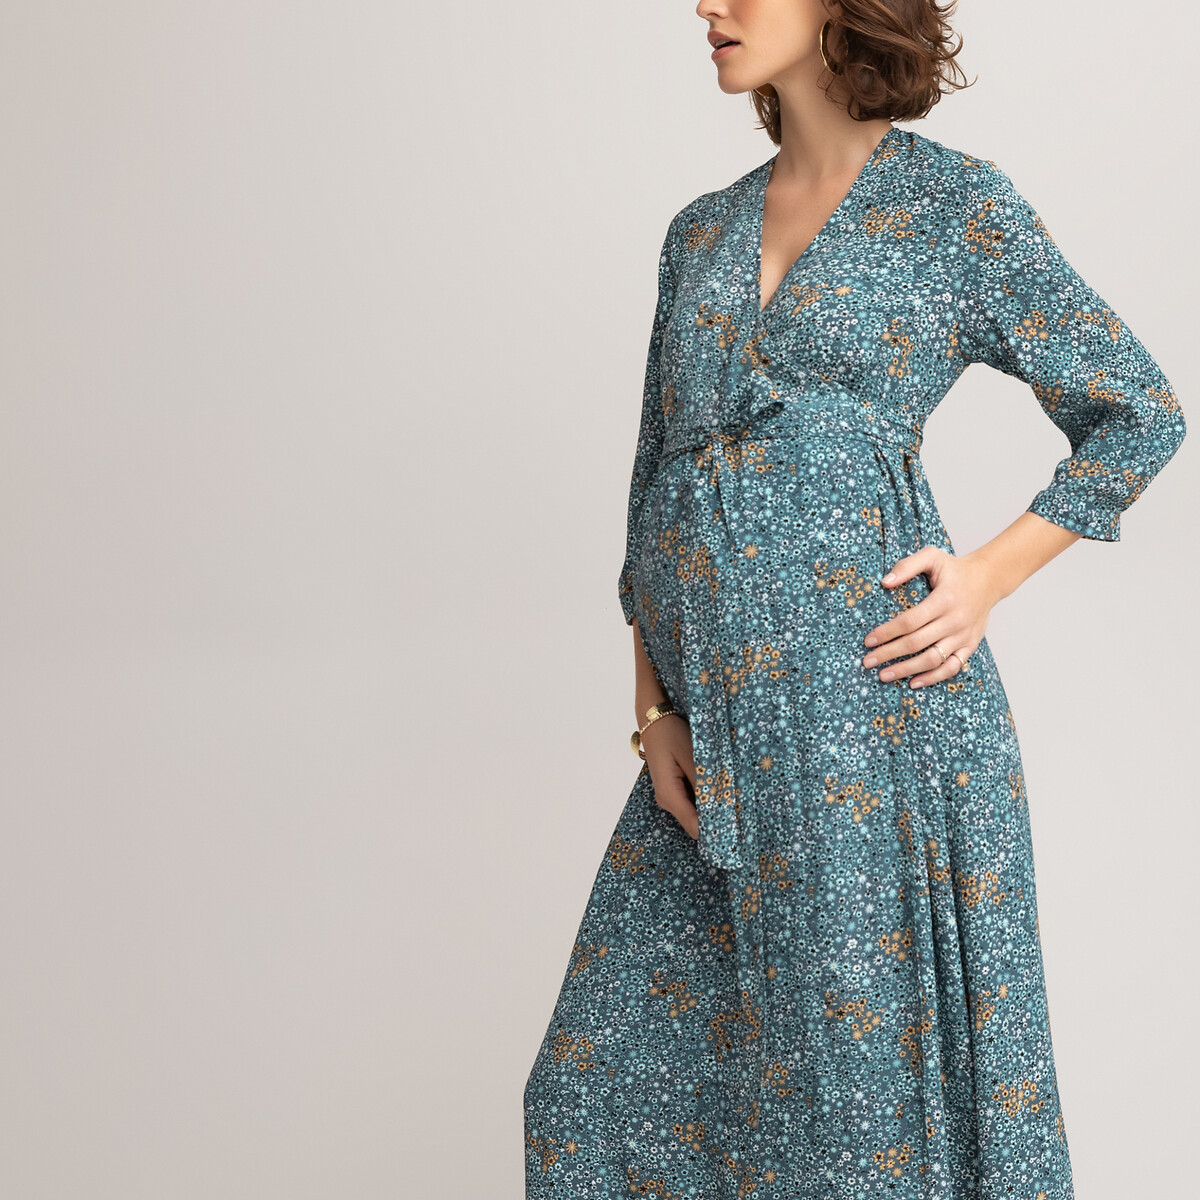 Платье LaRedoute Для периода беременности длинное с длинными рукавами с рисунком 36 (FR) - 42 (RUS) разноцветный, размер 36 (FR) - 42 (RUS) Для периода беременности длинное с длинными рукавами с рисунком 36 (FR) - 42 (RUS) разноцветный - фото 2